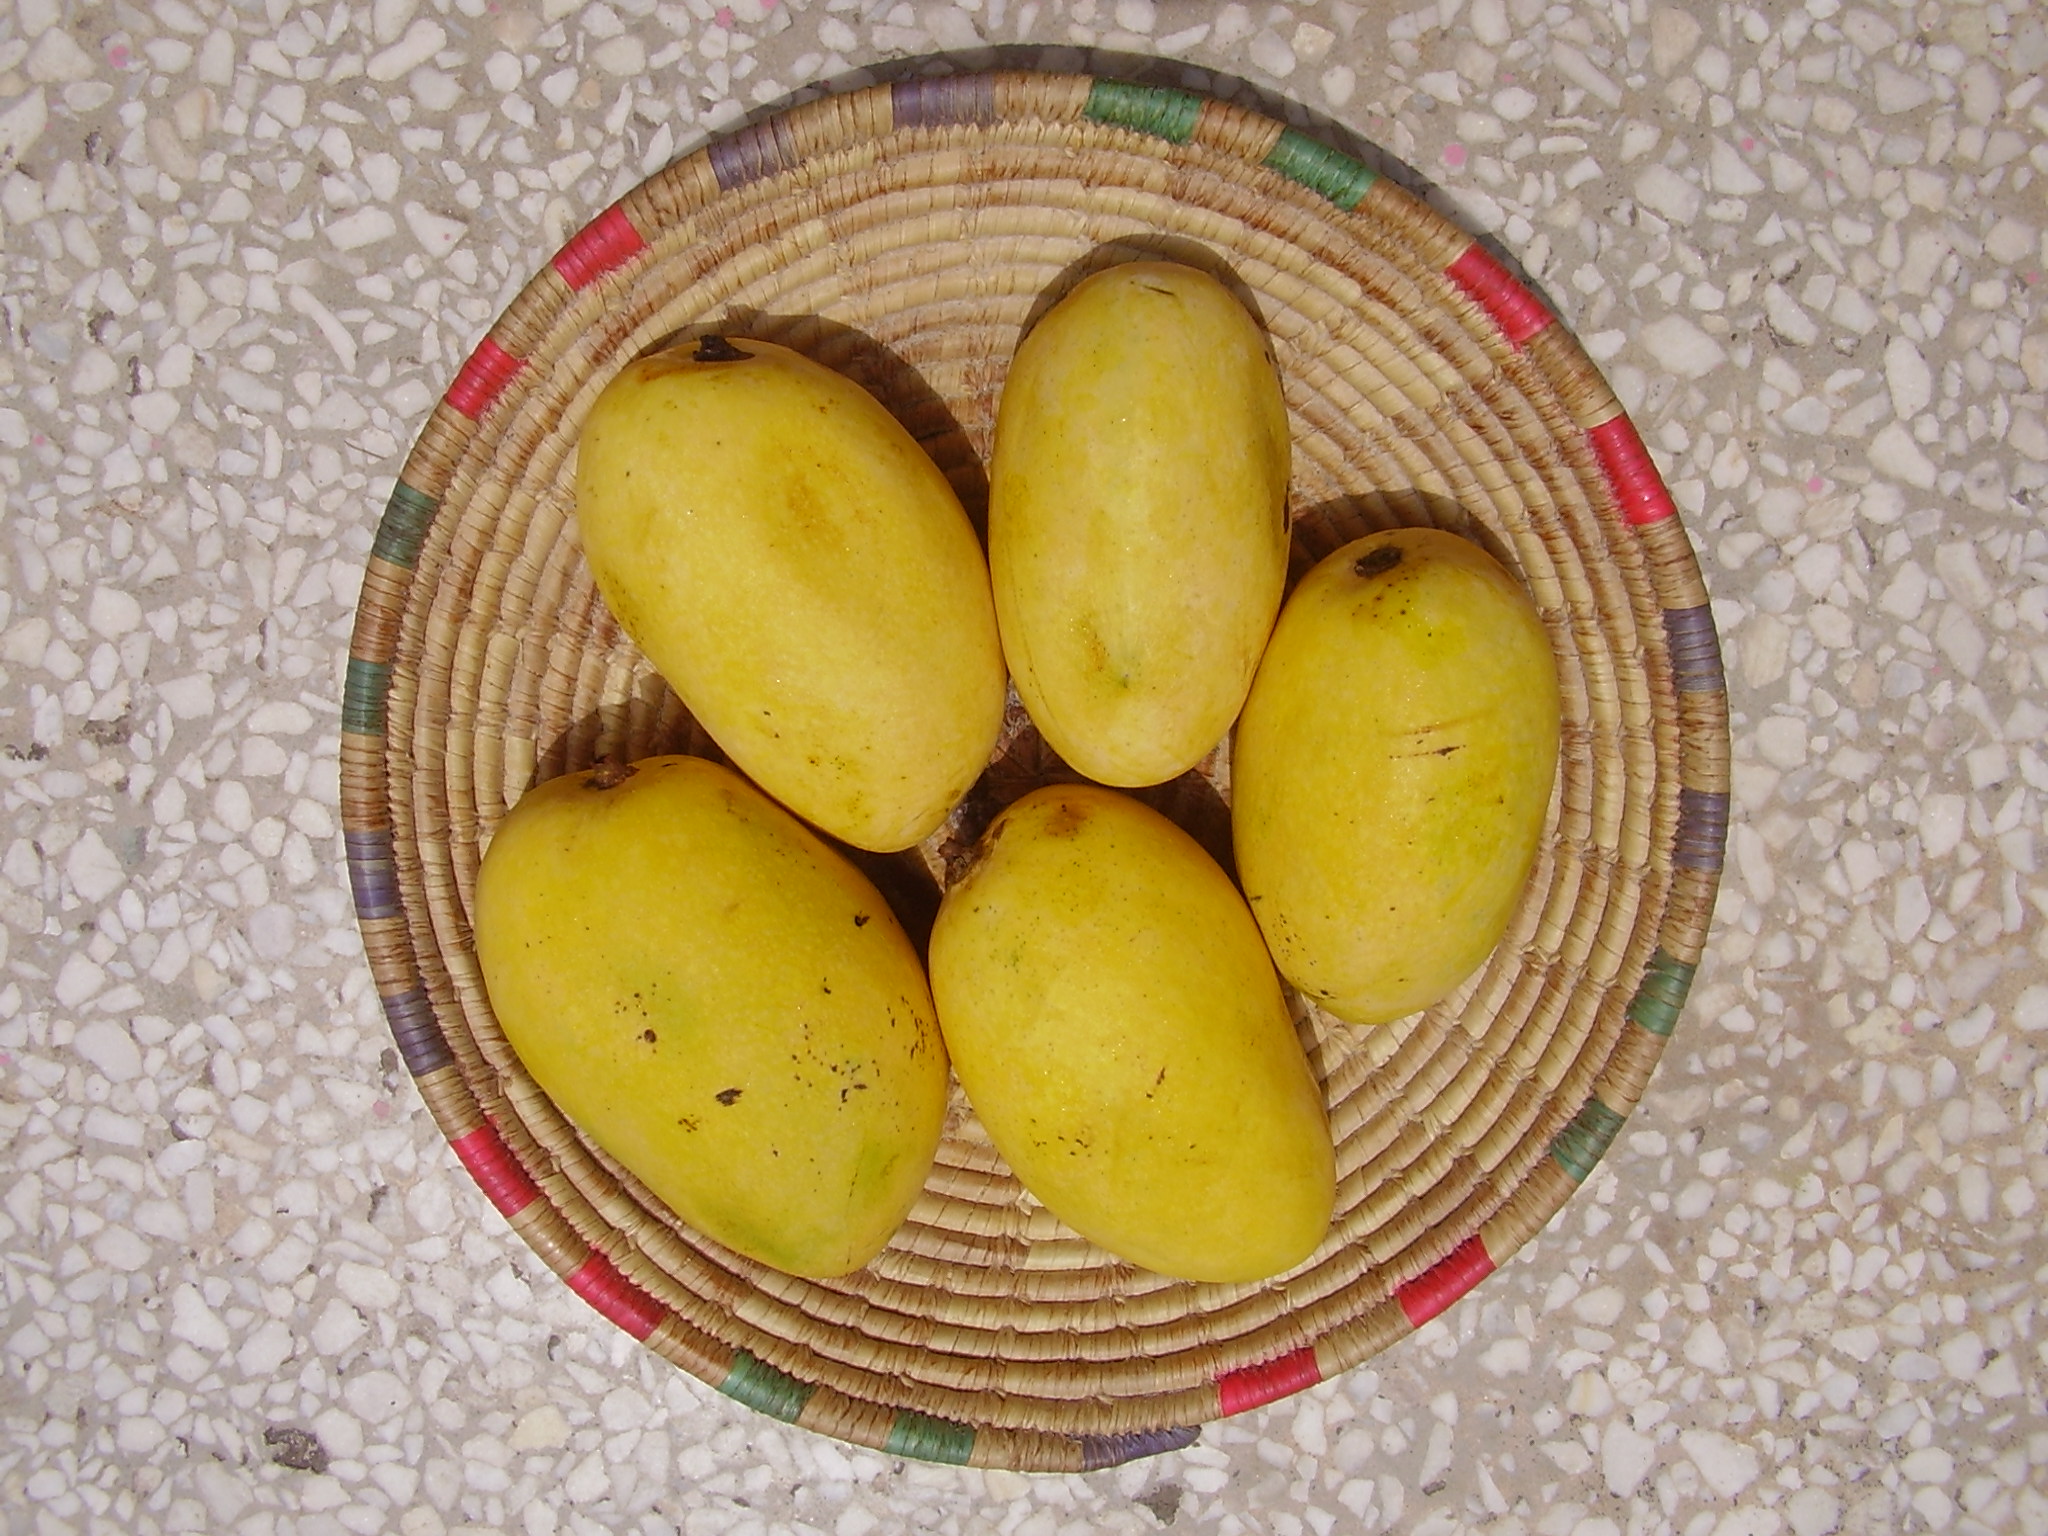 Chaunsa Mango, a famous variety of mango in Pakistan